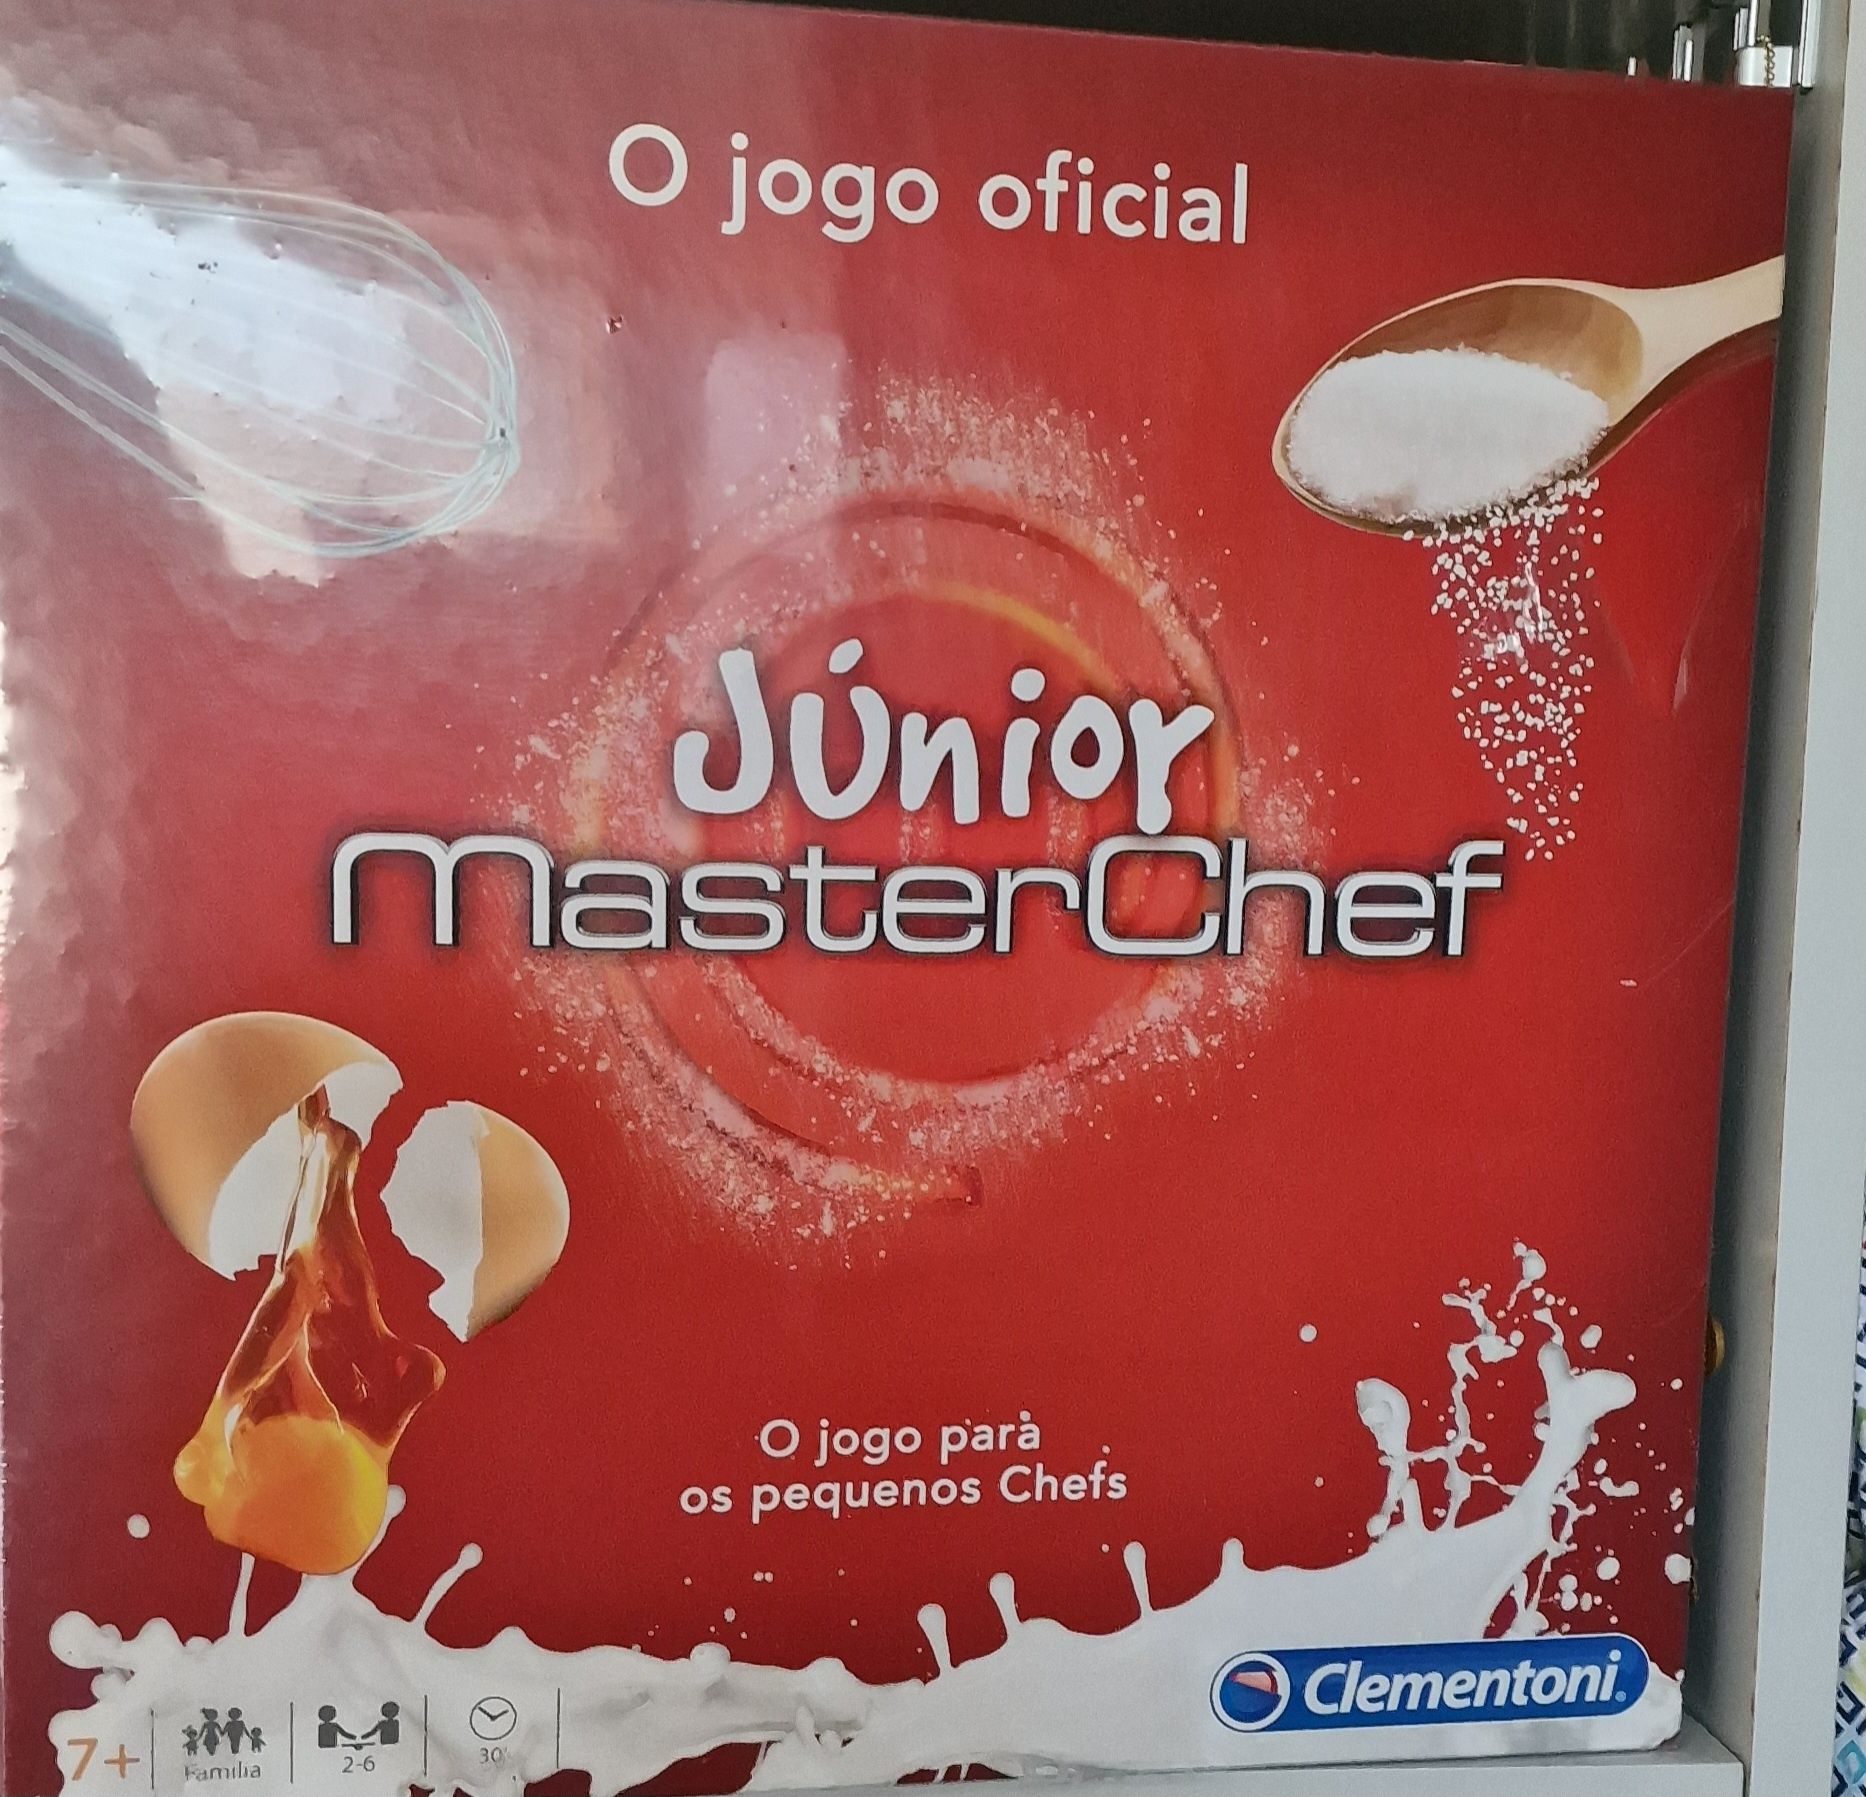 Masterchefe Junior clementoni